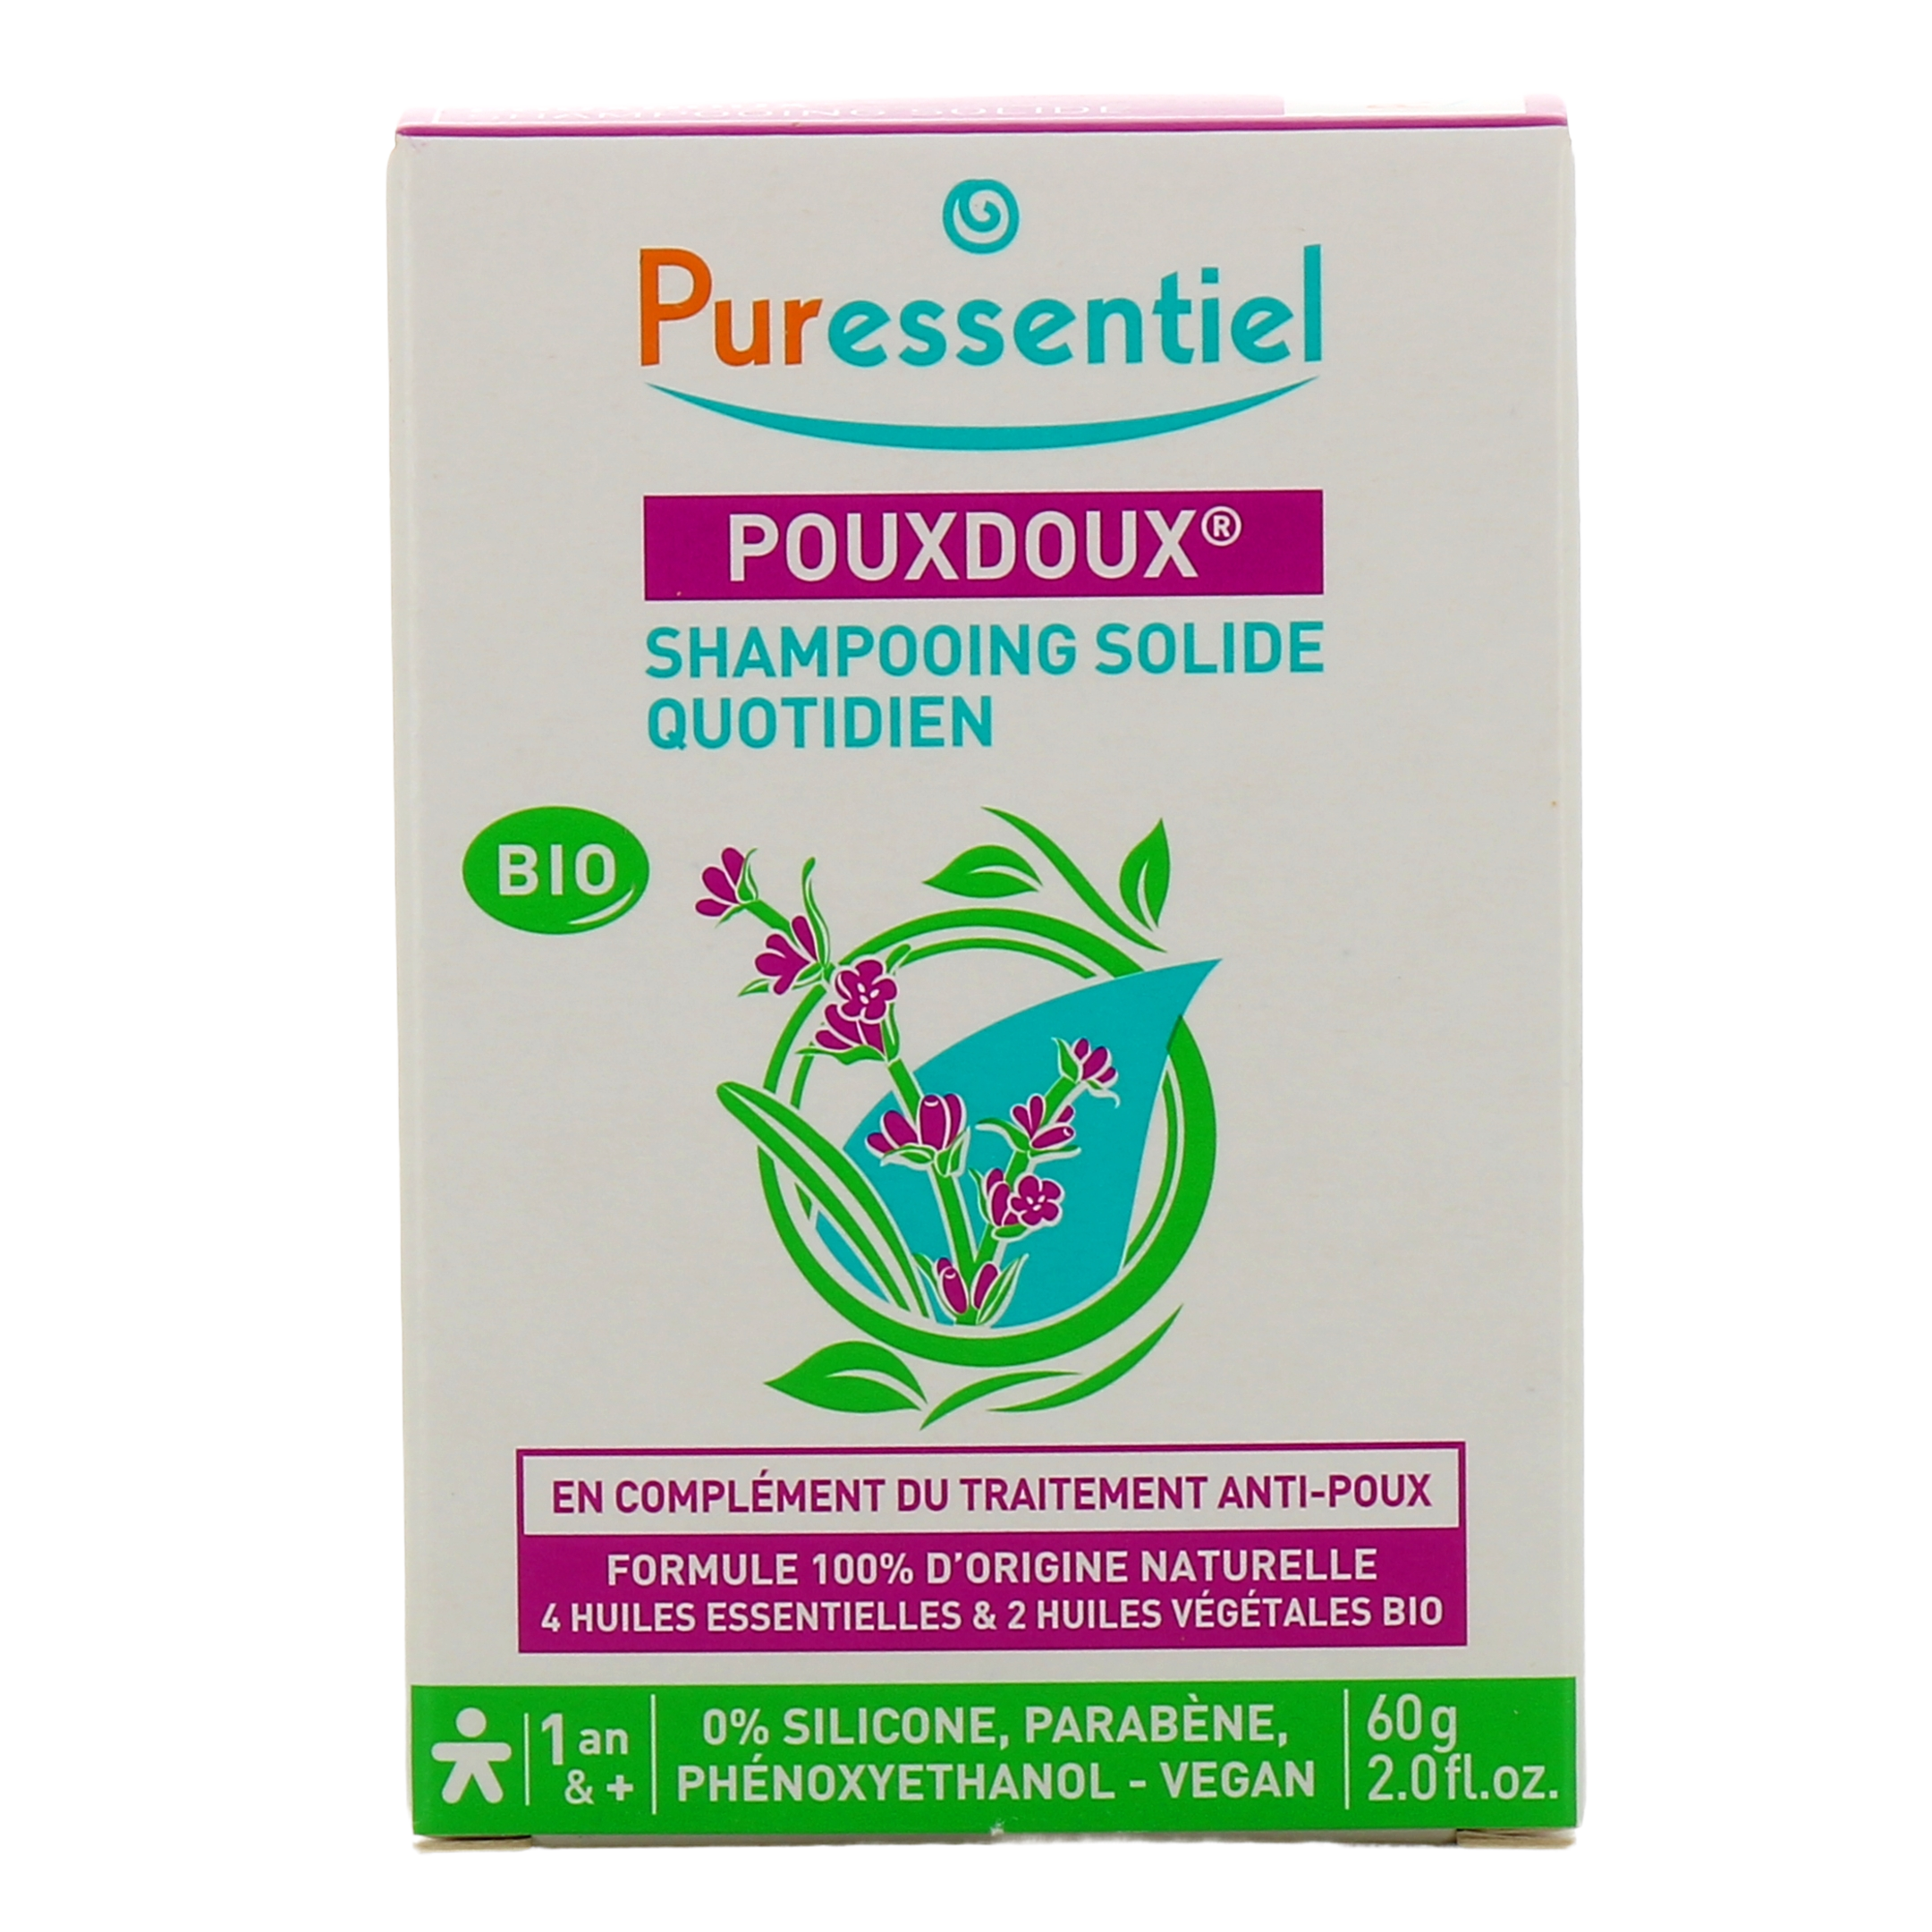 Puressentiel Pouxdoux shampooing solide - Prévention anti poux